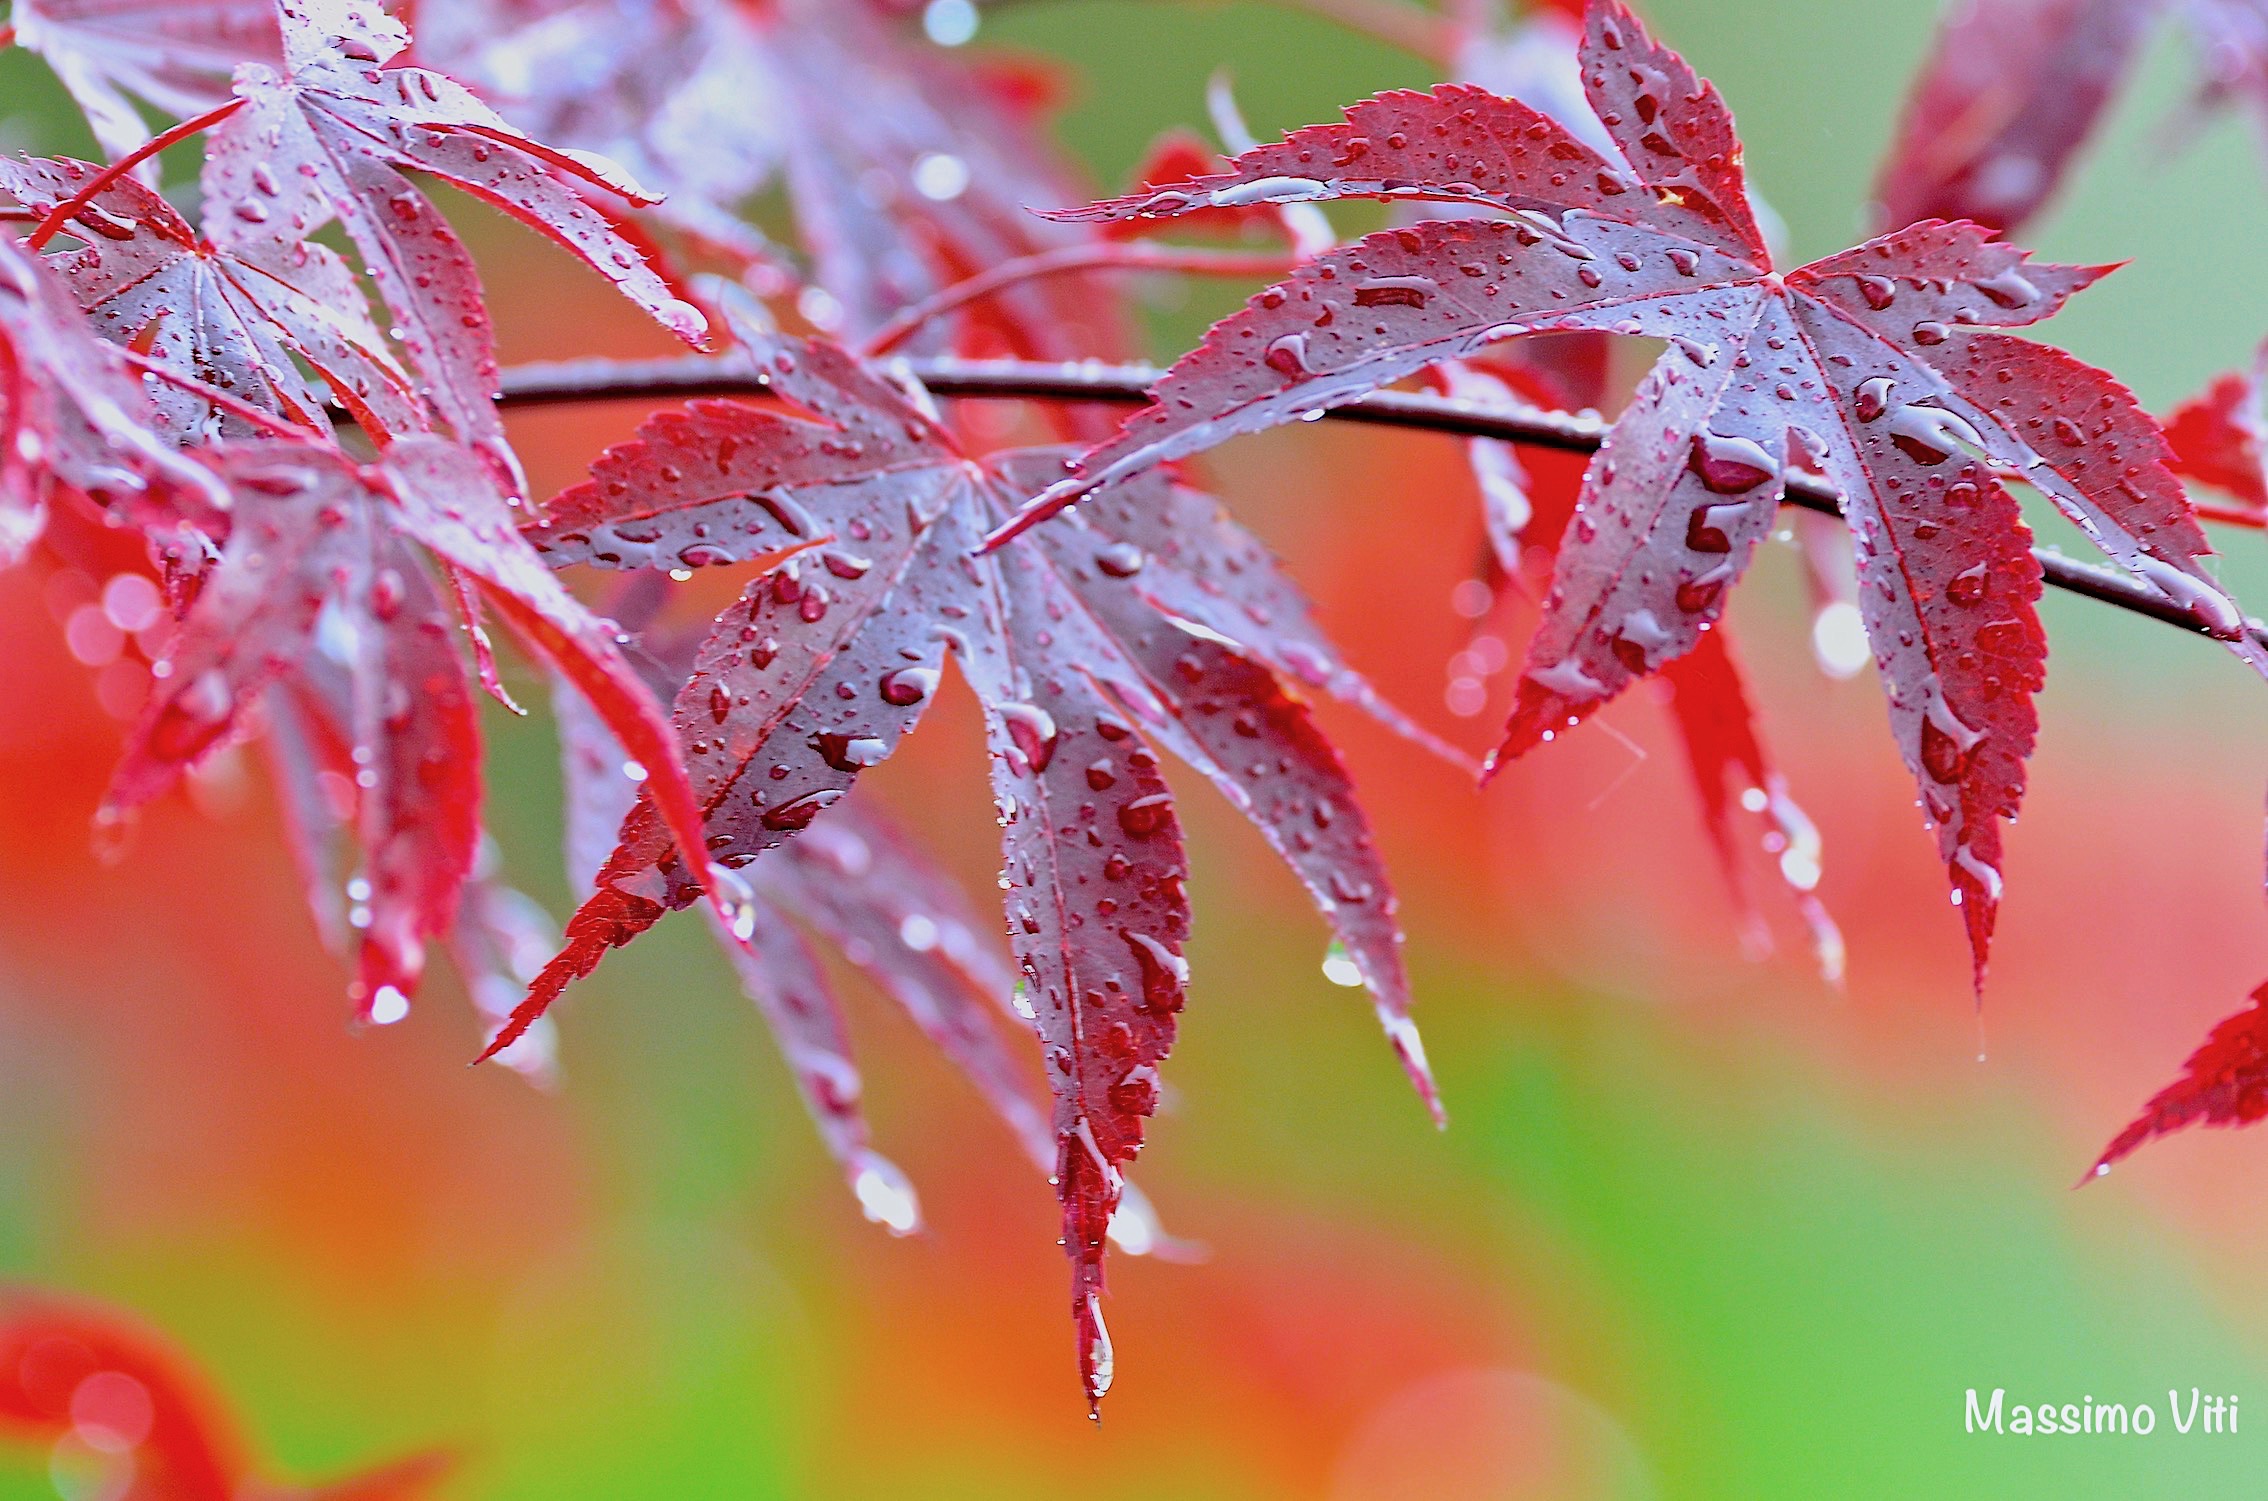 Rain on maple leaves...